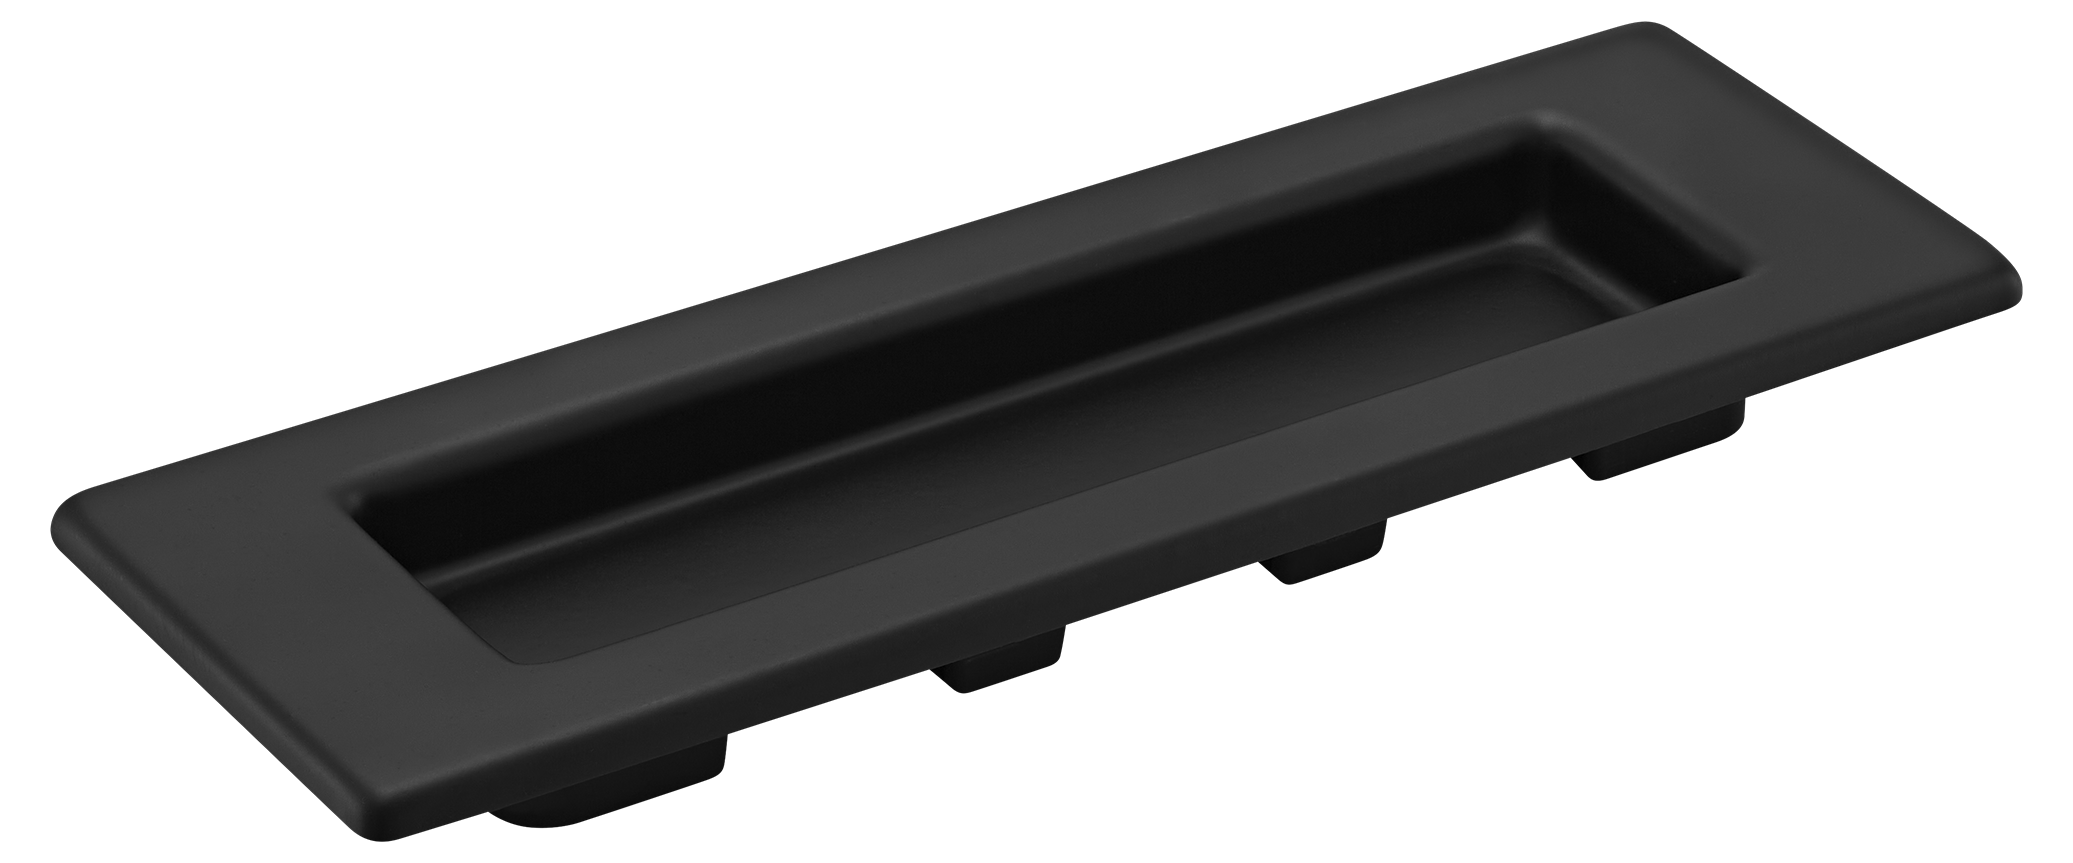 MHS153 BL, ручка для раздвижных дверей, цвет - черный фото купить Липецк